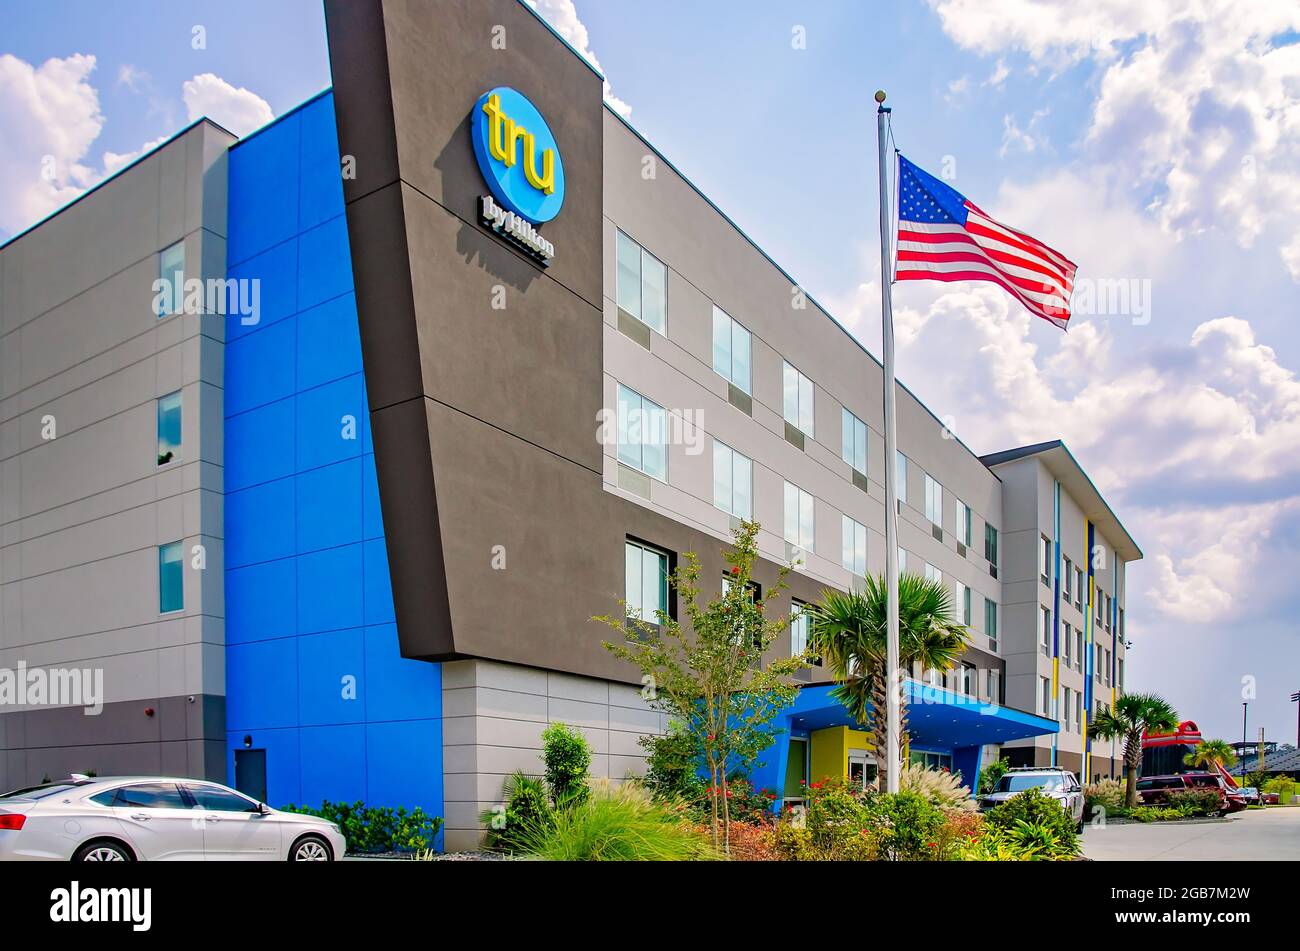 Ein Tru by Hilton Hotel ist auf dem Satchel Paige Drive am 1. August 2021 in Mobile, Alabama, abgebildet. Hilton Worldwide lancierte die neue mittelklassige Hotelmarke. Stockfoto